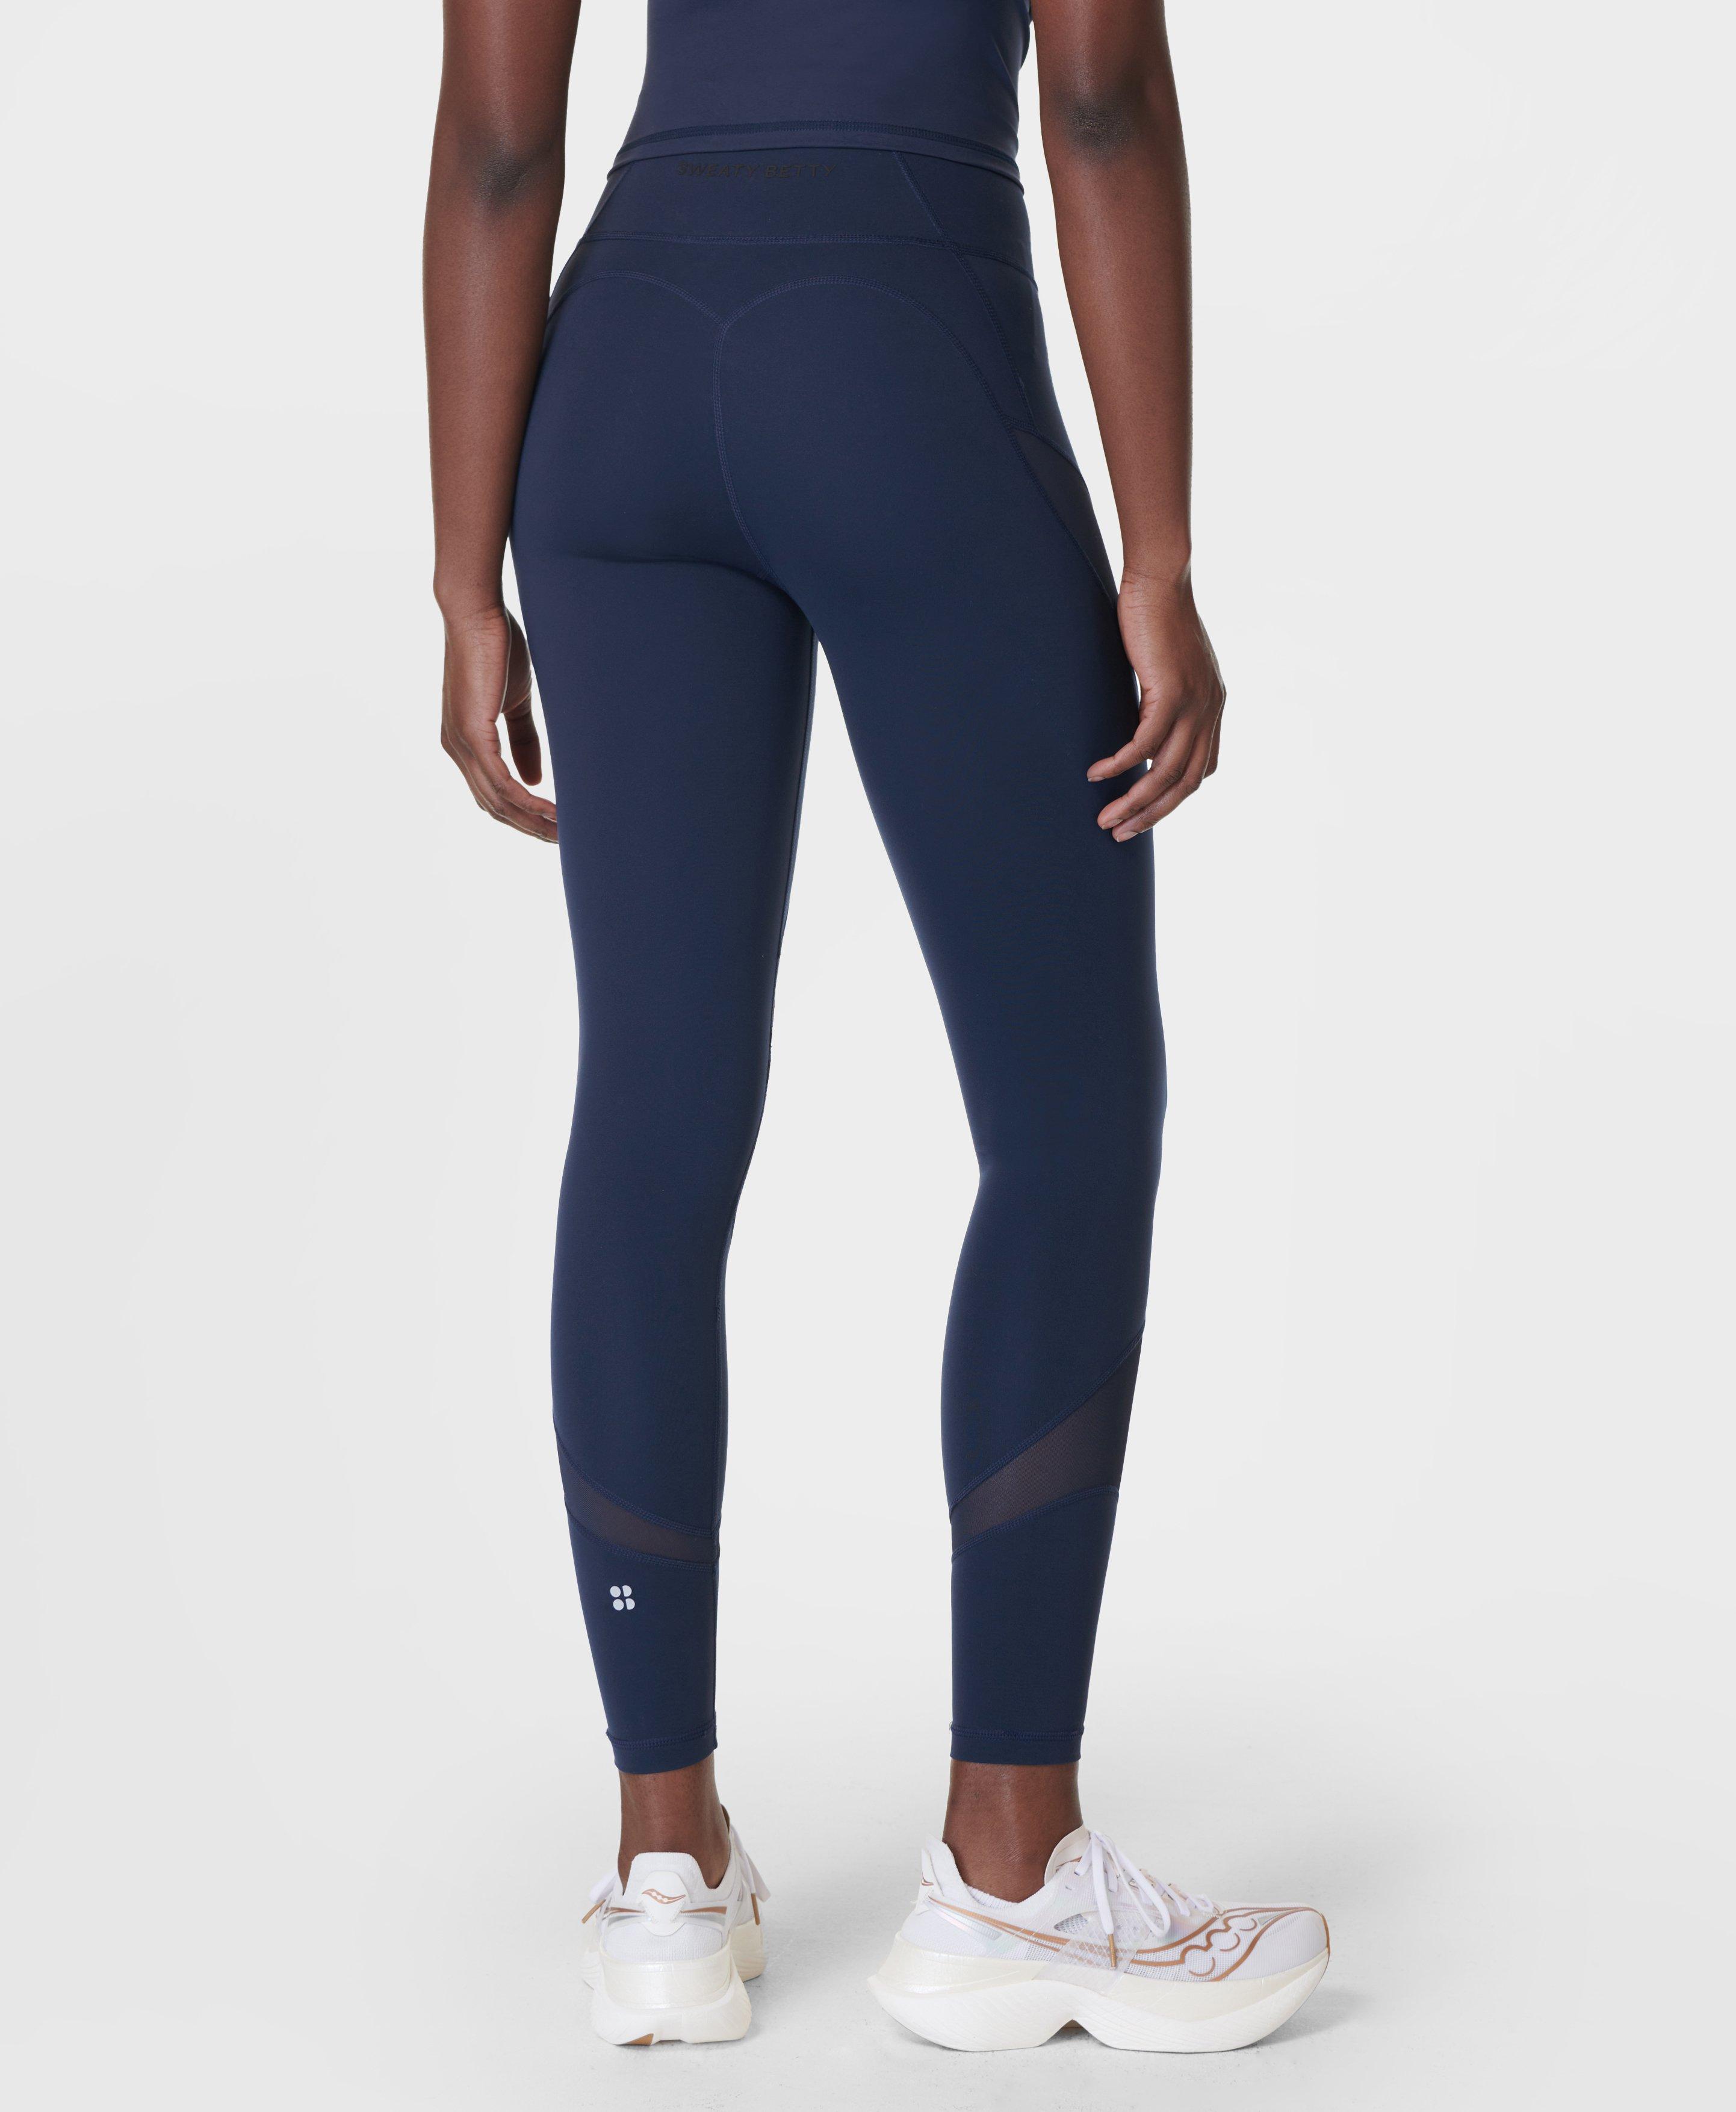 Women's workout leggings blue ESSENZIALE